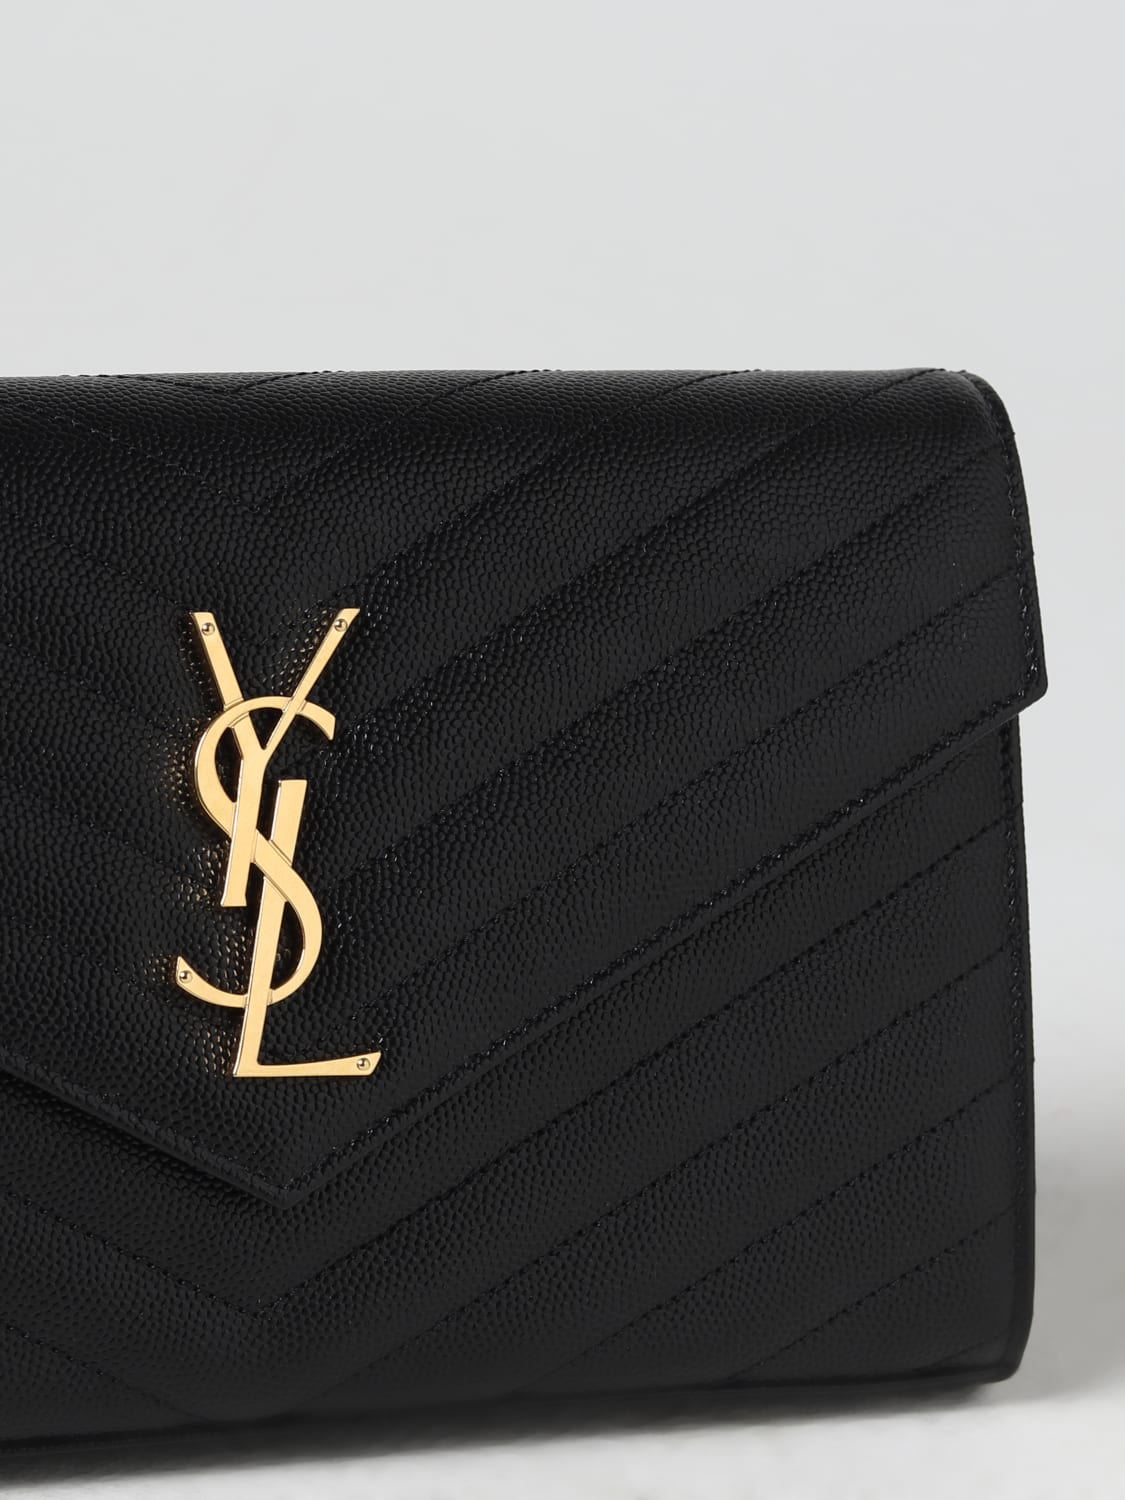 Saint Laurent 'Monogram' clutch, Women's Bags